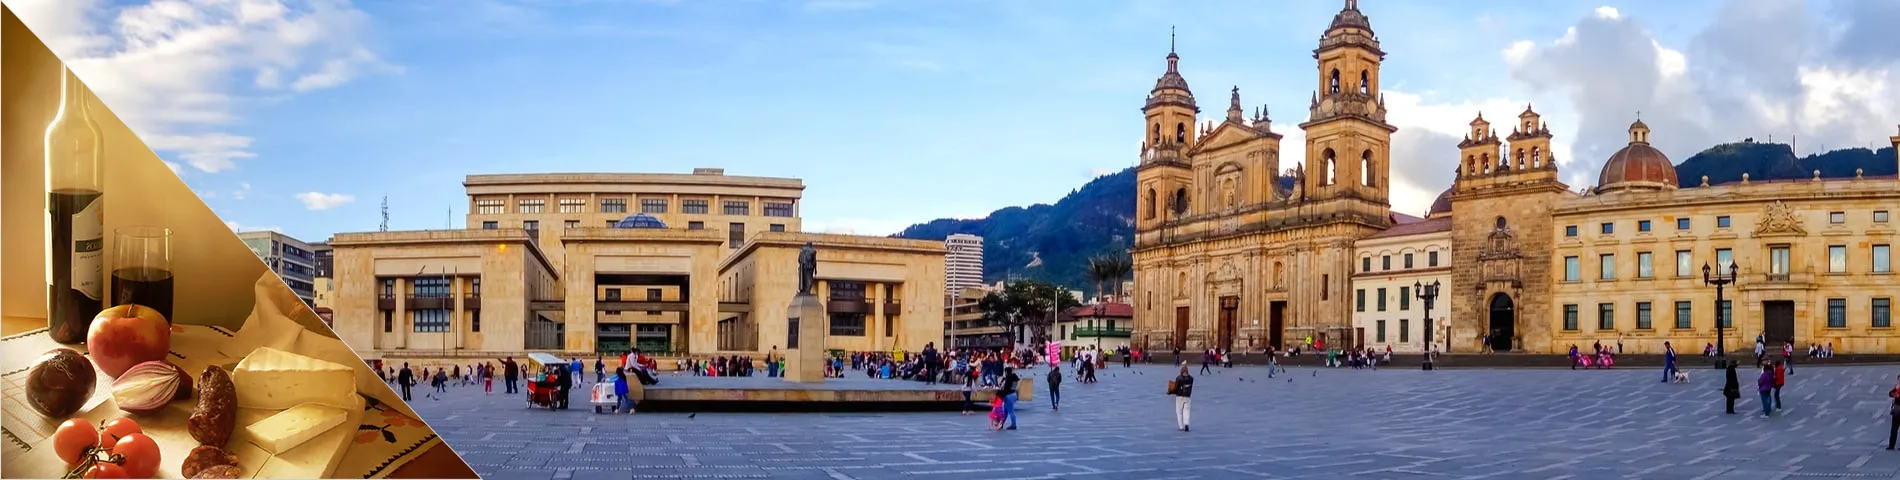 Bogota - Espanja & kulttuuri